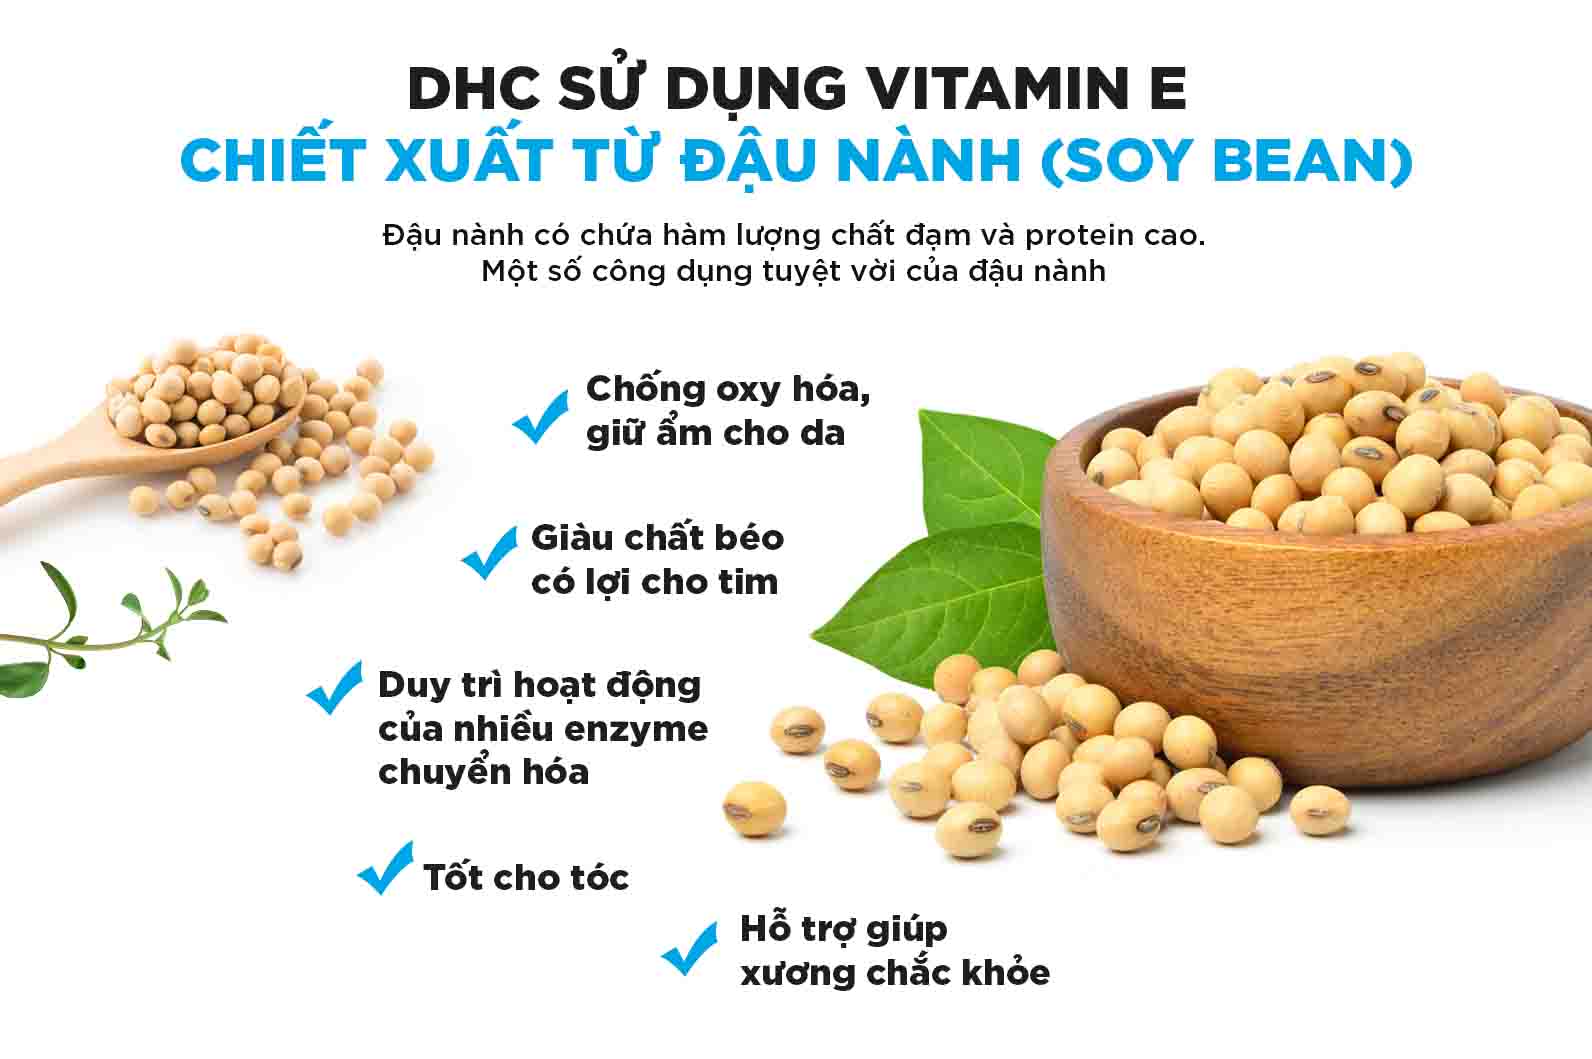 Ưu điểm của viên uống vitamin E DHC